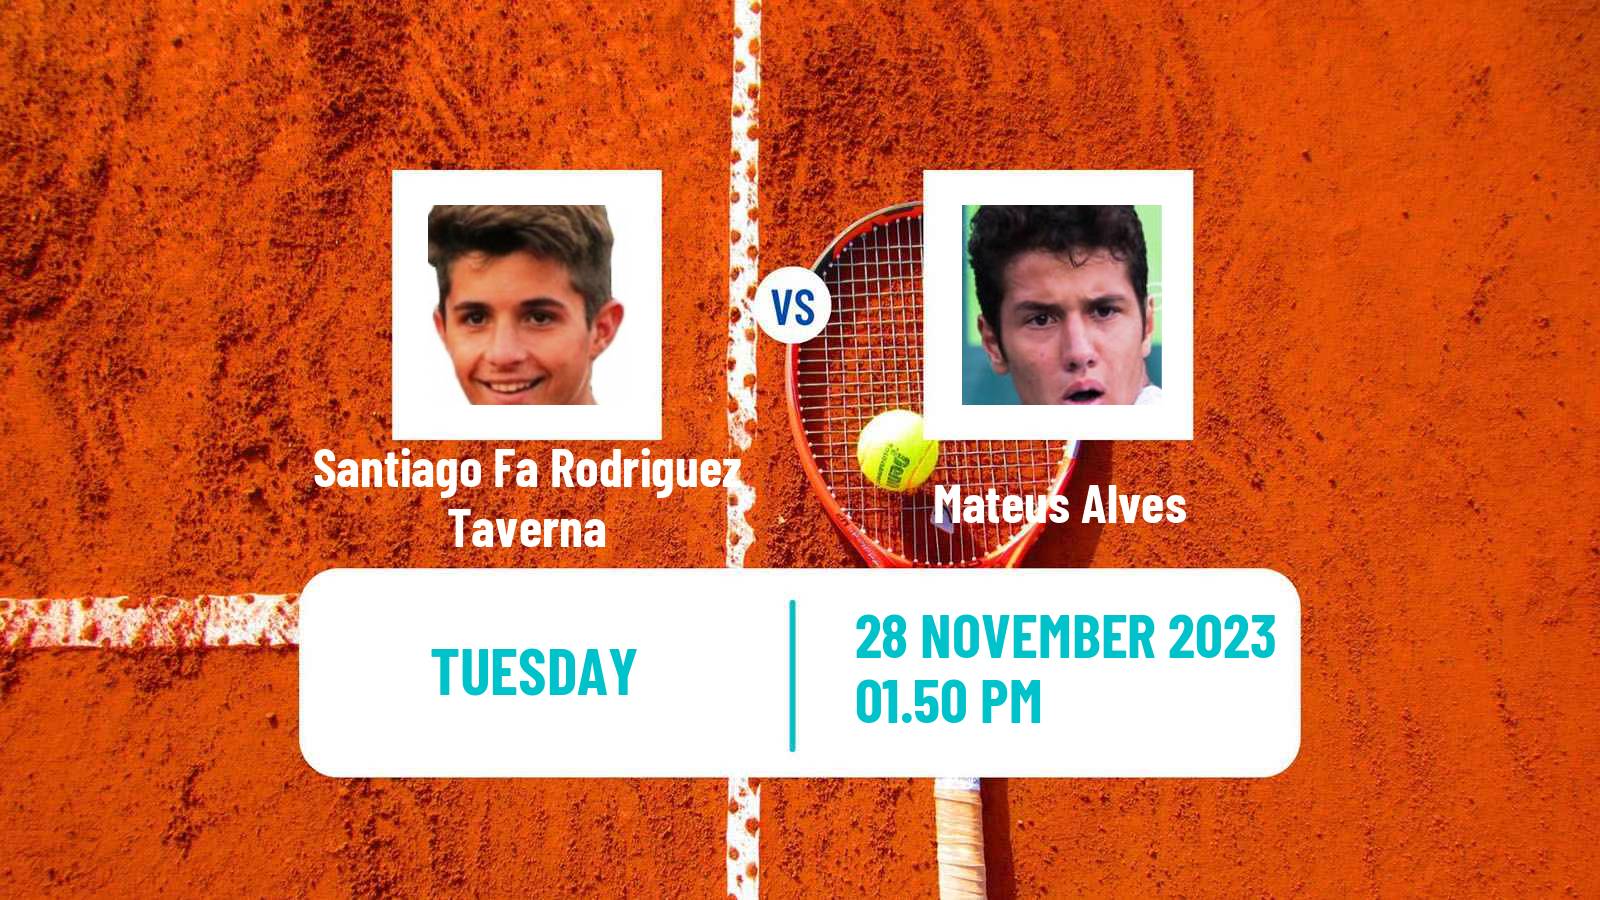 Tennis Temuco Challenger Men Santiago Fa Rodriguez Taverna - Mateus Alves